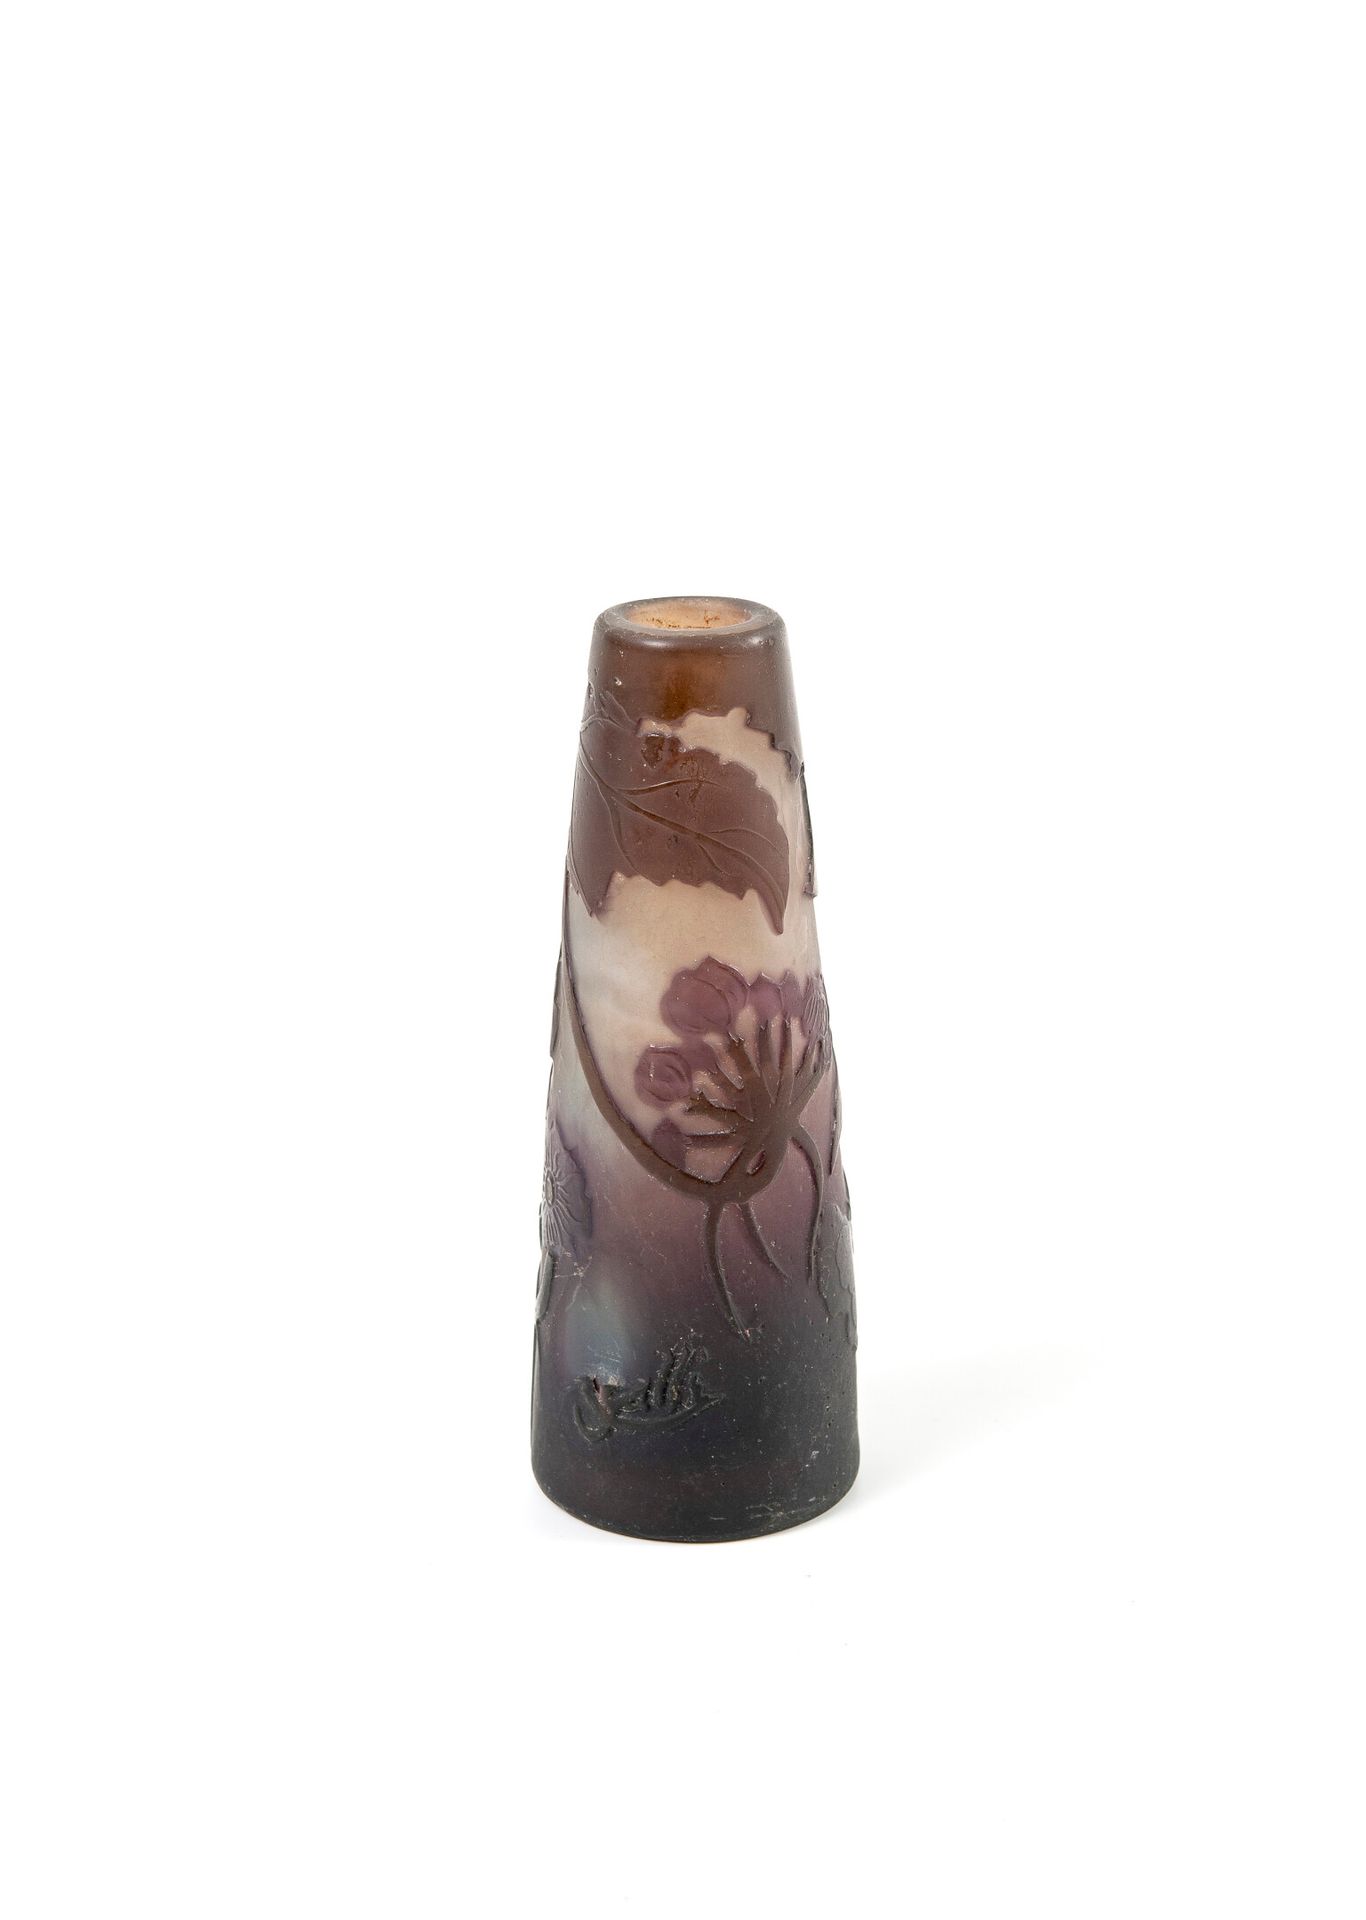 ÉTABLISSEMENTS GALLÉ Kleine kegelstumpfförmige Vase mit flachem Boden.

Proof in&hellip;